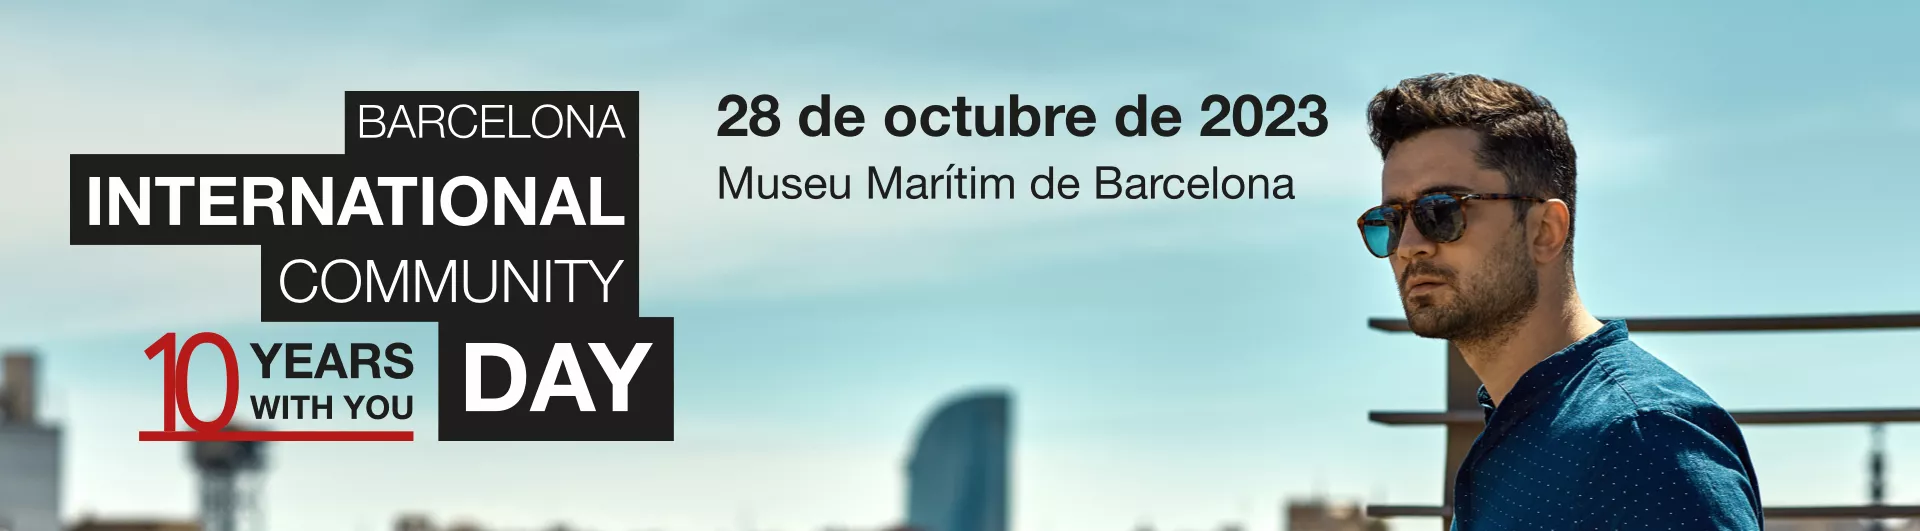 Barcelona International Community Day. 28 de octubre de 2023. Museu Marítim de Barcelona